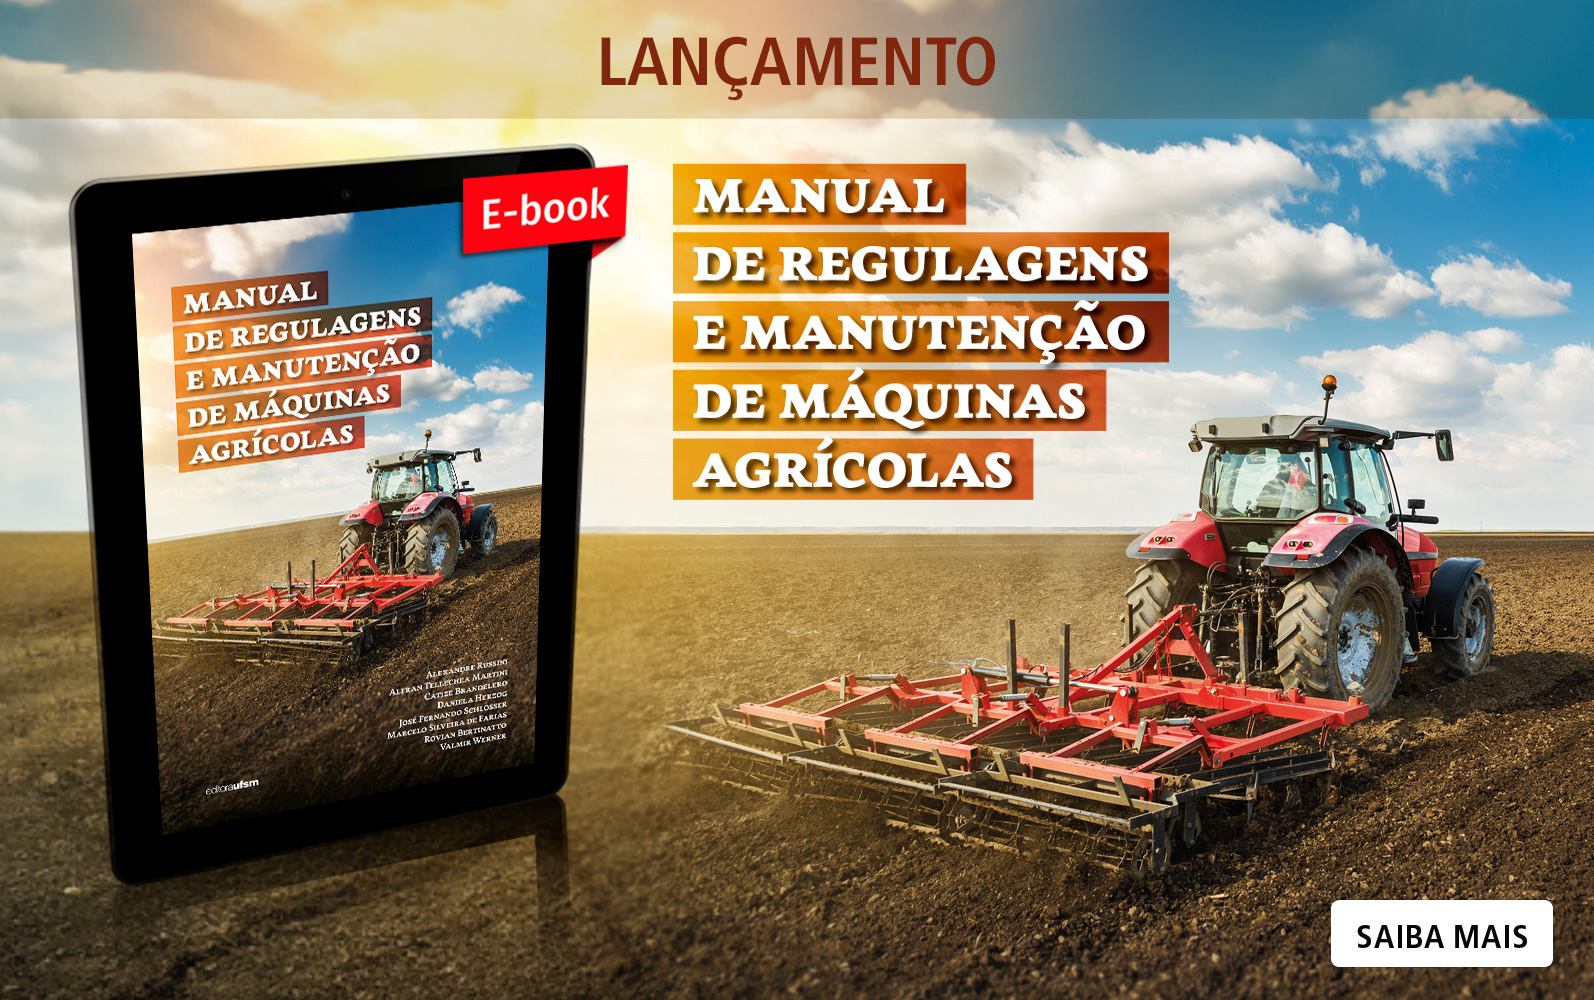 Saiba mais sobre o e-book Manual de regulagens e manutenção de máquinas agrícolas